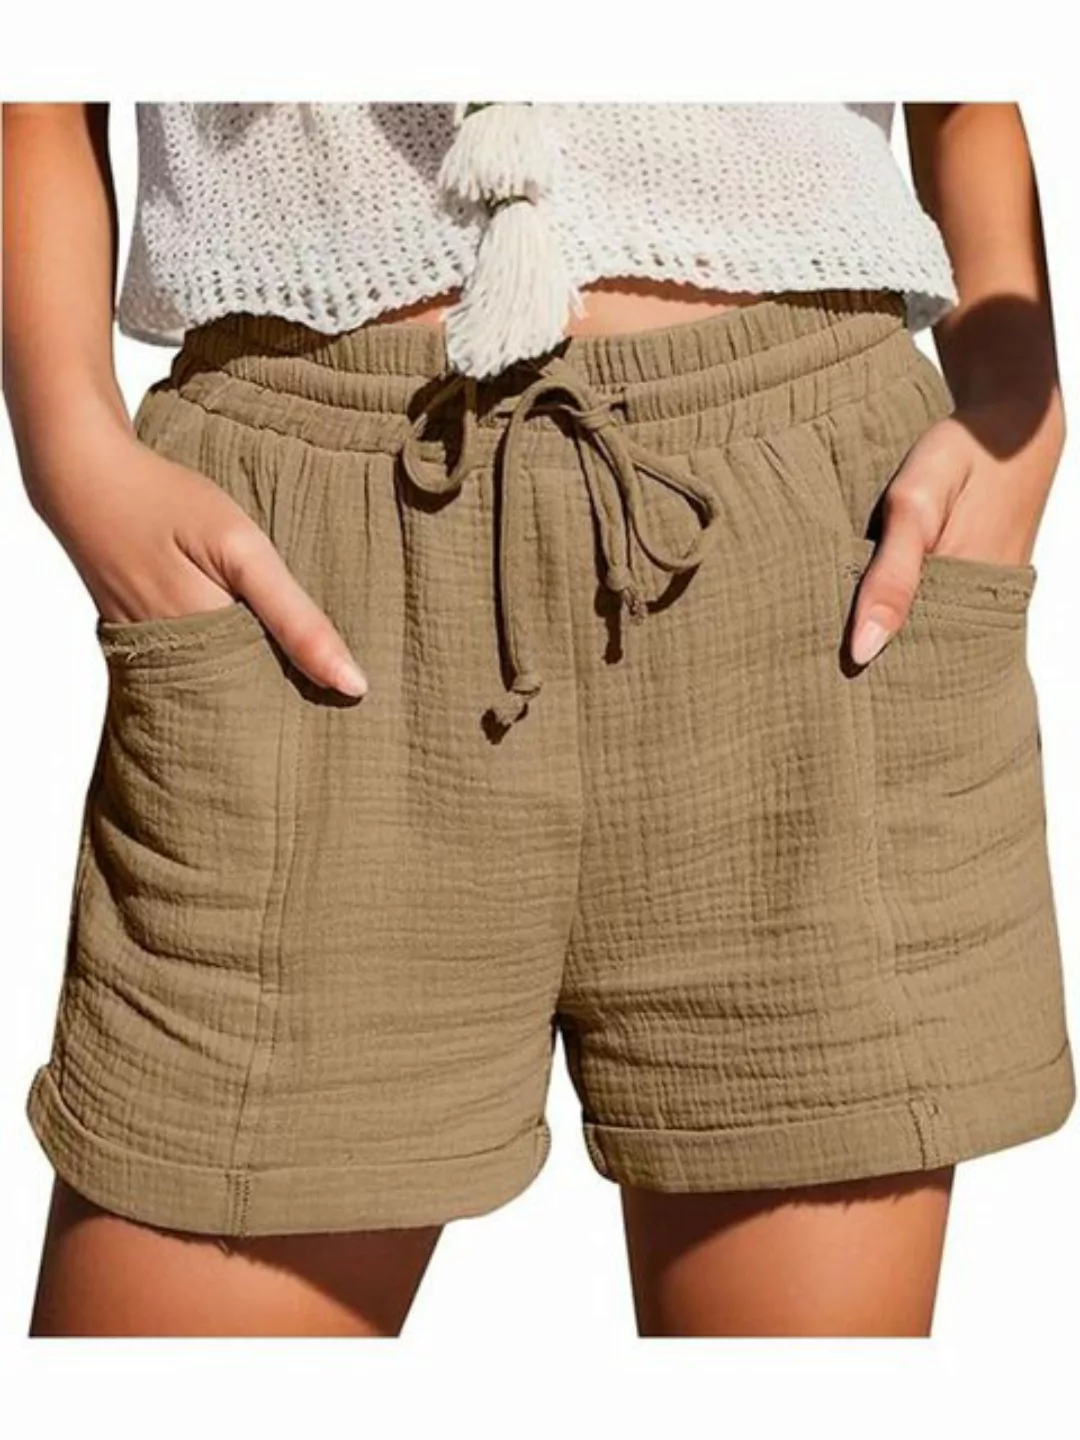 KIKI Strandshorts Shorts Damen Sommer Beach Shorts Sport Shorts mit Kordelz günstig online kaufen